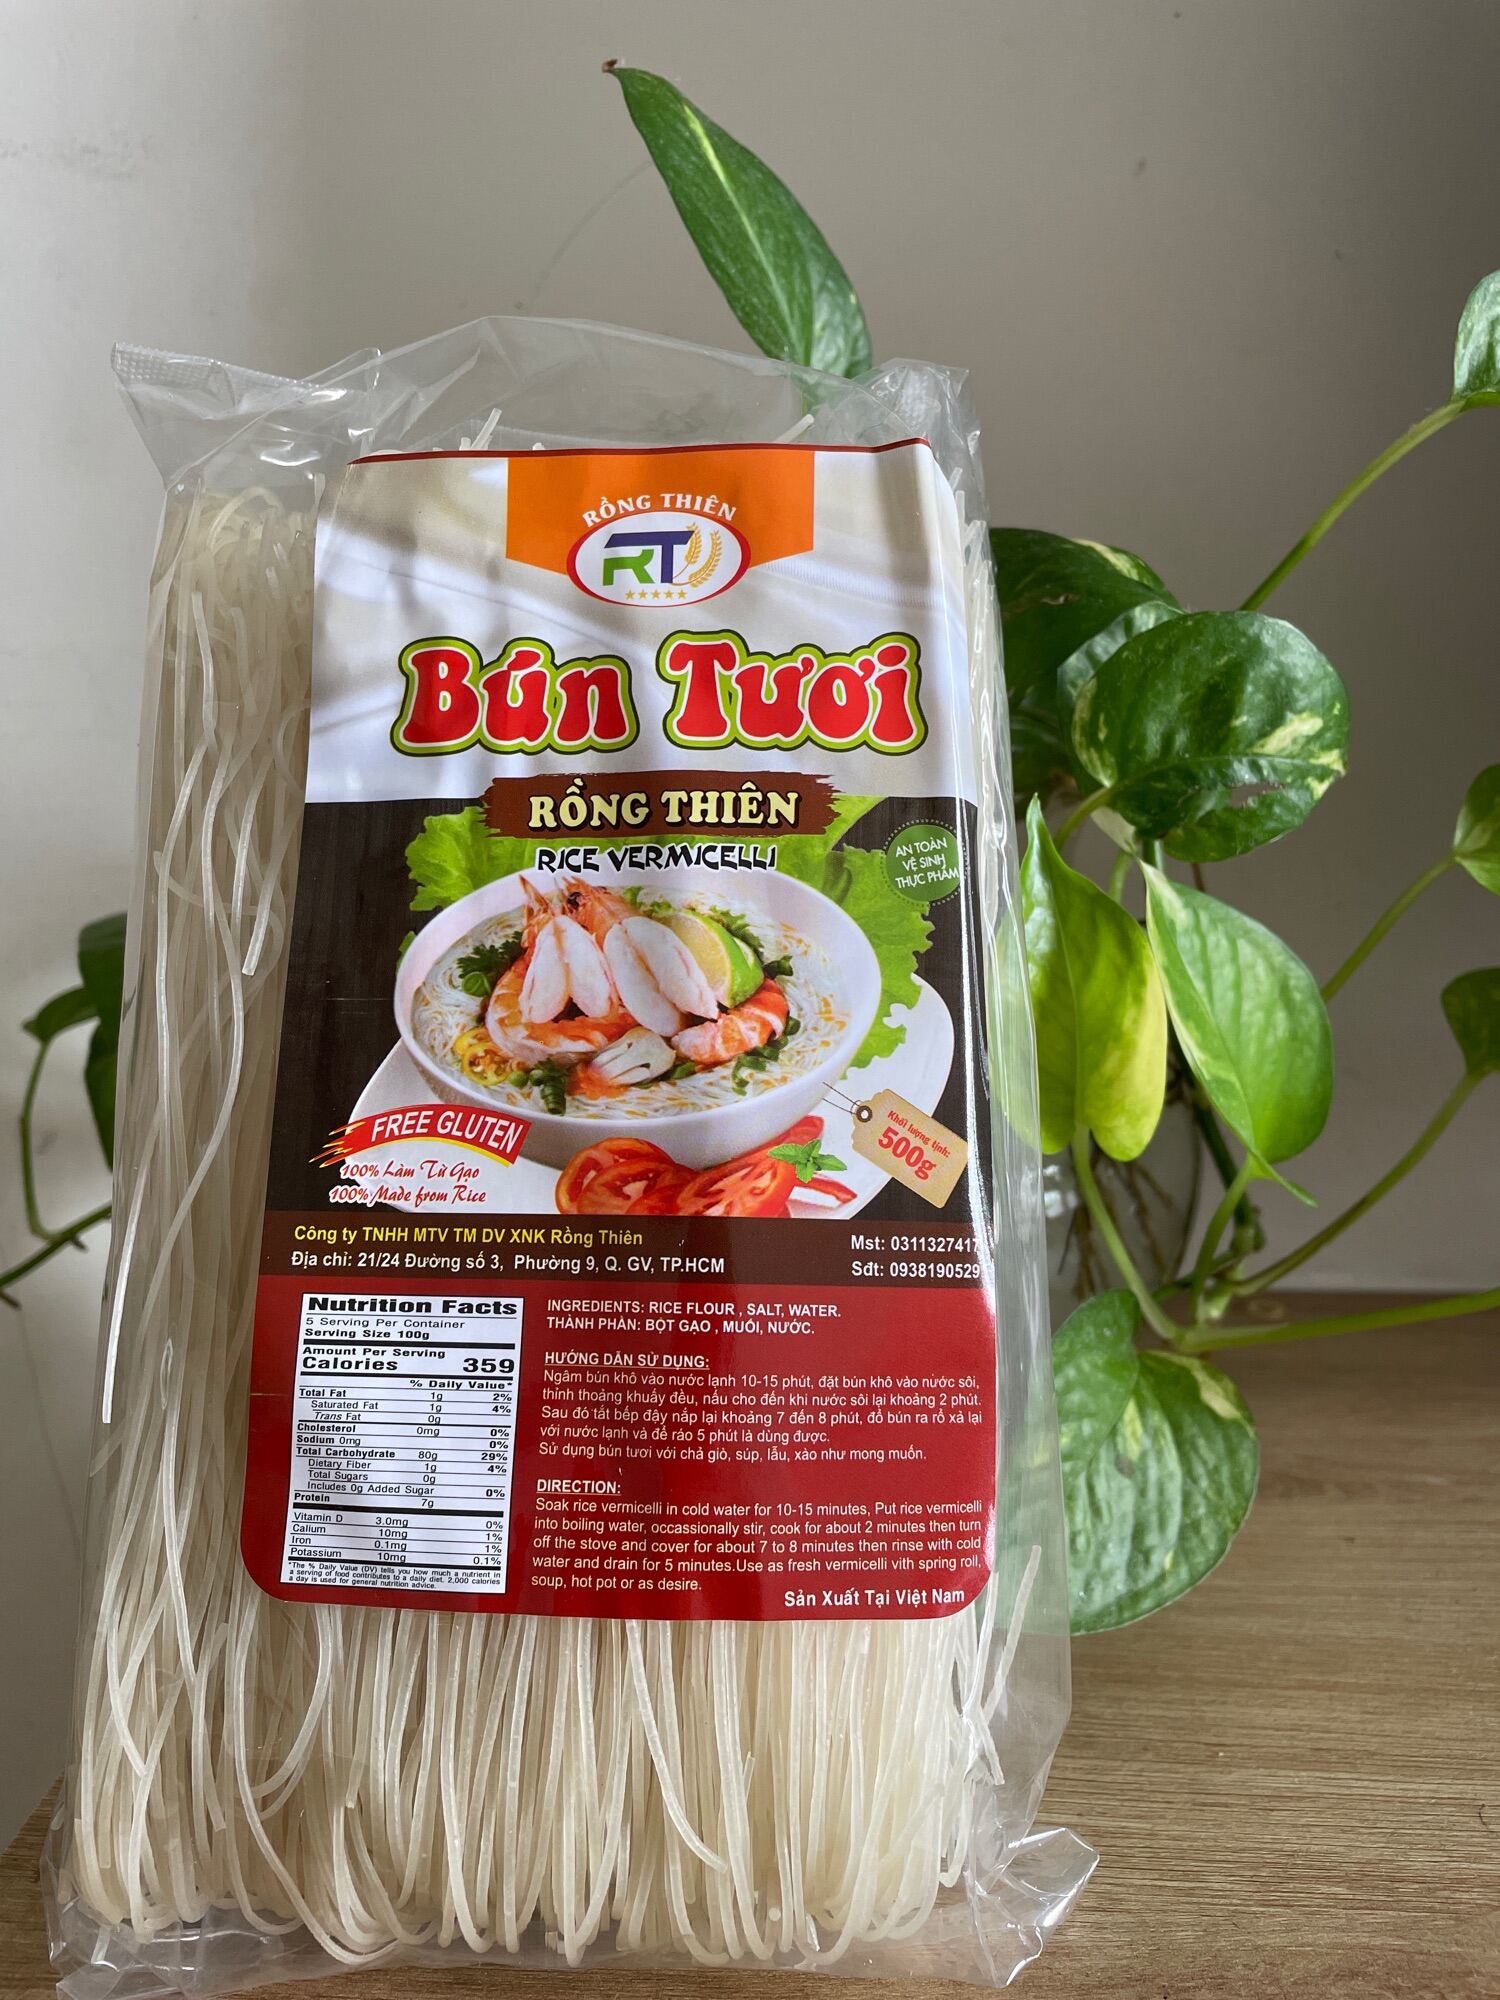 fideos-de-arroz-rong-thien-estilo-bun-500g-title-1